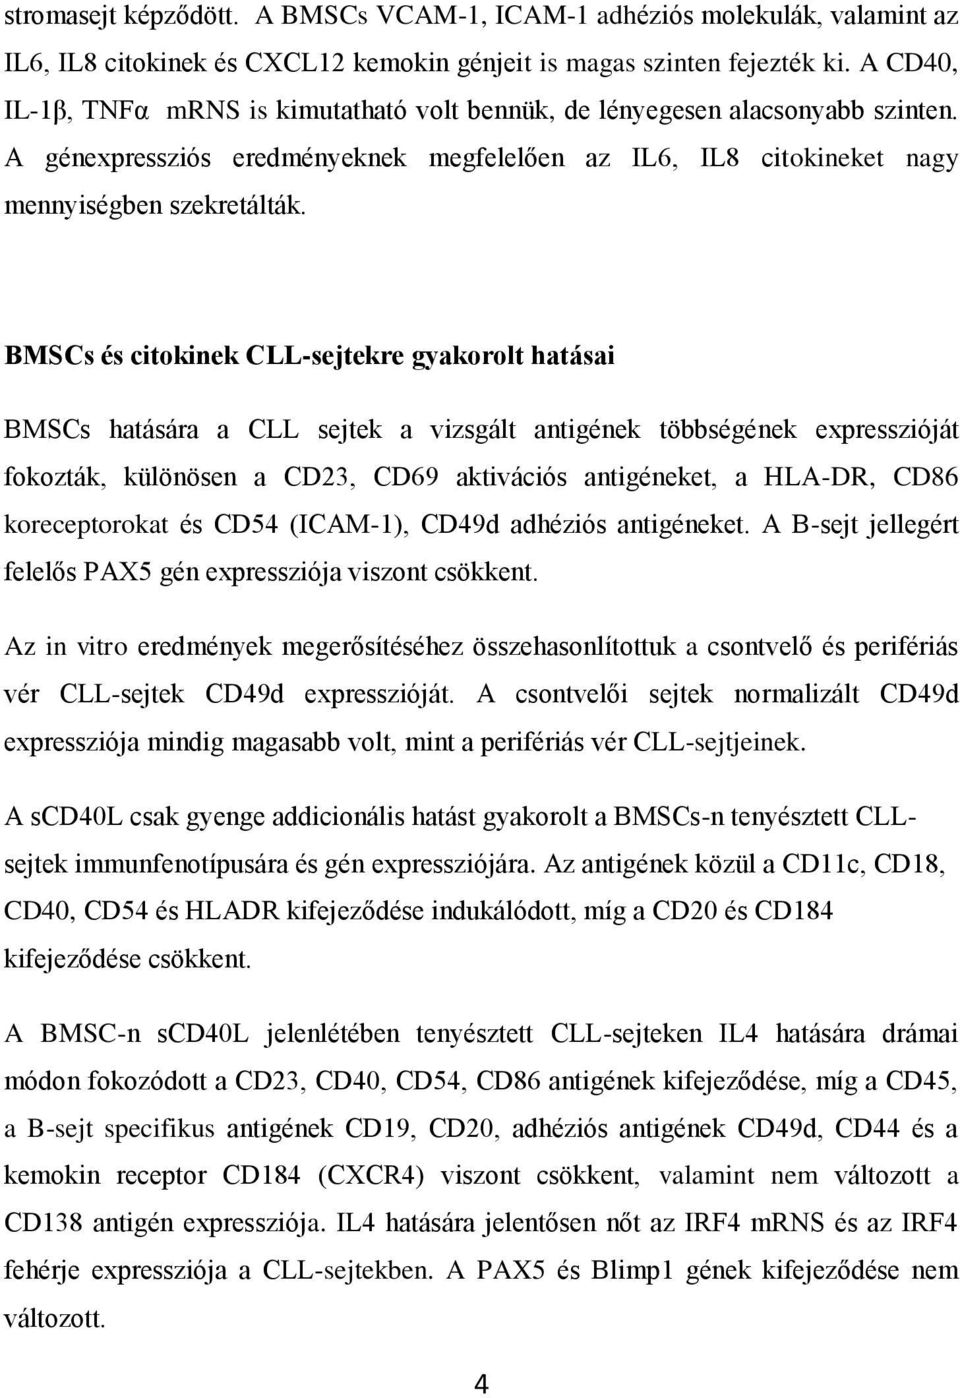 BMSCs és citokinek CLL-sejtekre gyakorolt hatásai BMSCs hatására a CLL sejtek a vizsgált antigének többségének expresszióját fokozták, különösen a CD23, CD69 aktivációs antigéneket, a HLA-DR, CD86